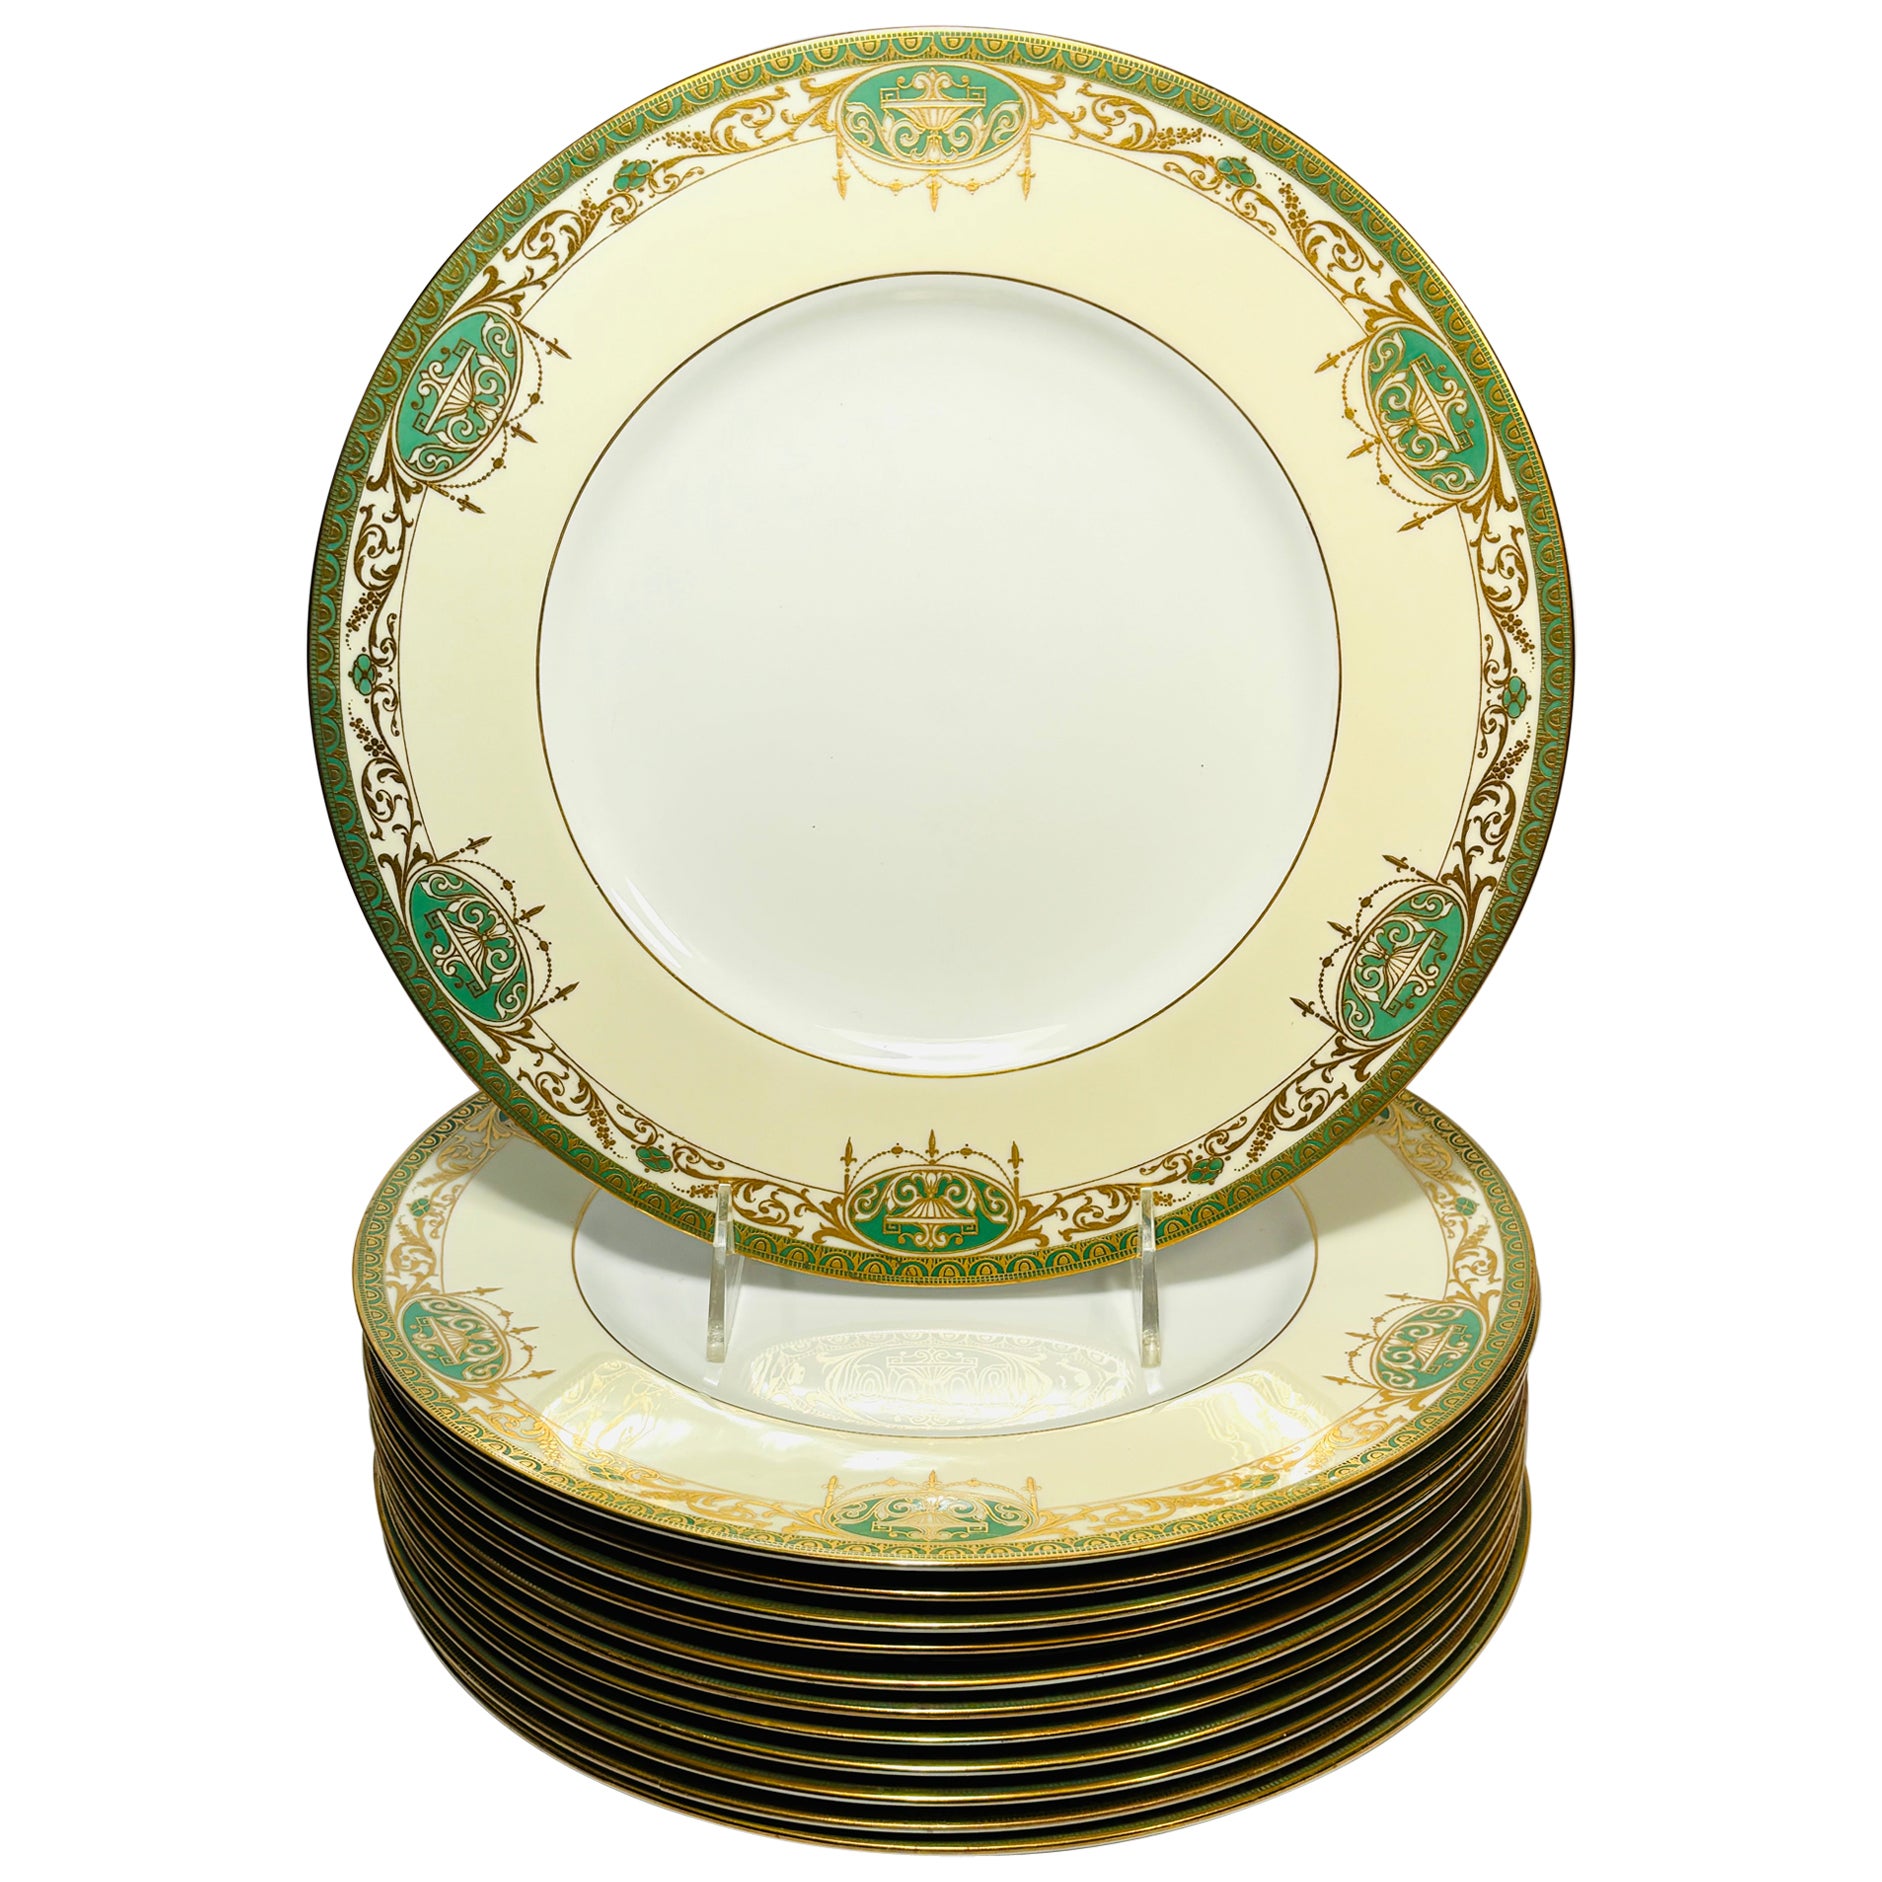 12 assiettes plates anglaises anciennes vertes et dorées en relief, motif néoclassique en vente